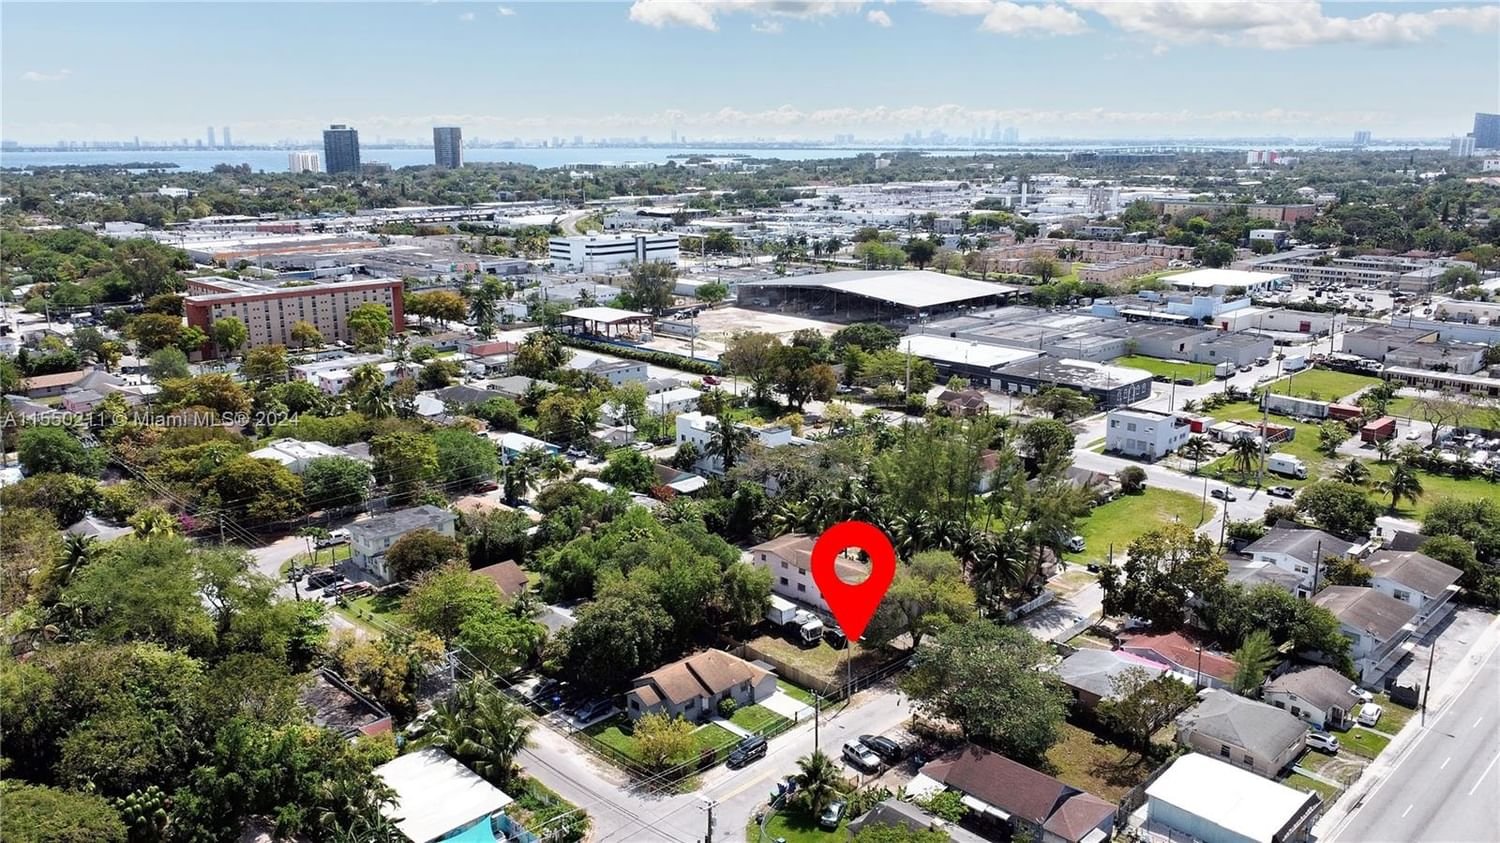 Real estate property located at 7551 Miami Ct, Miami-Dade County, Little River Gardens, Miami, FL